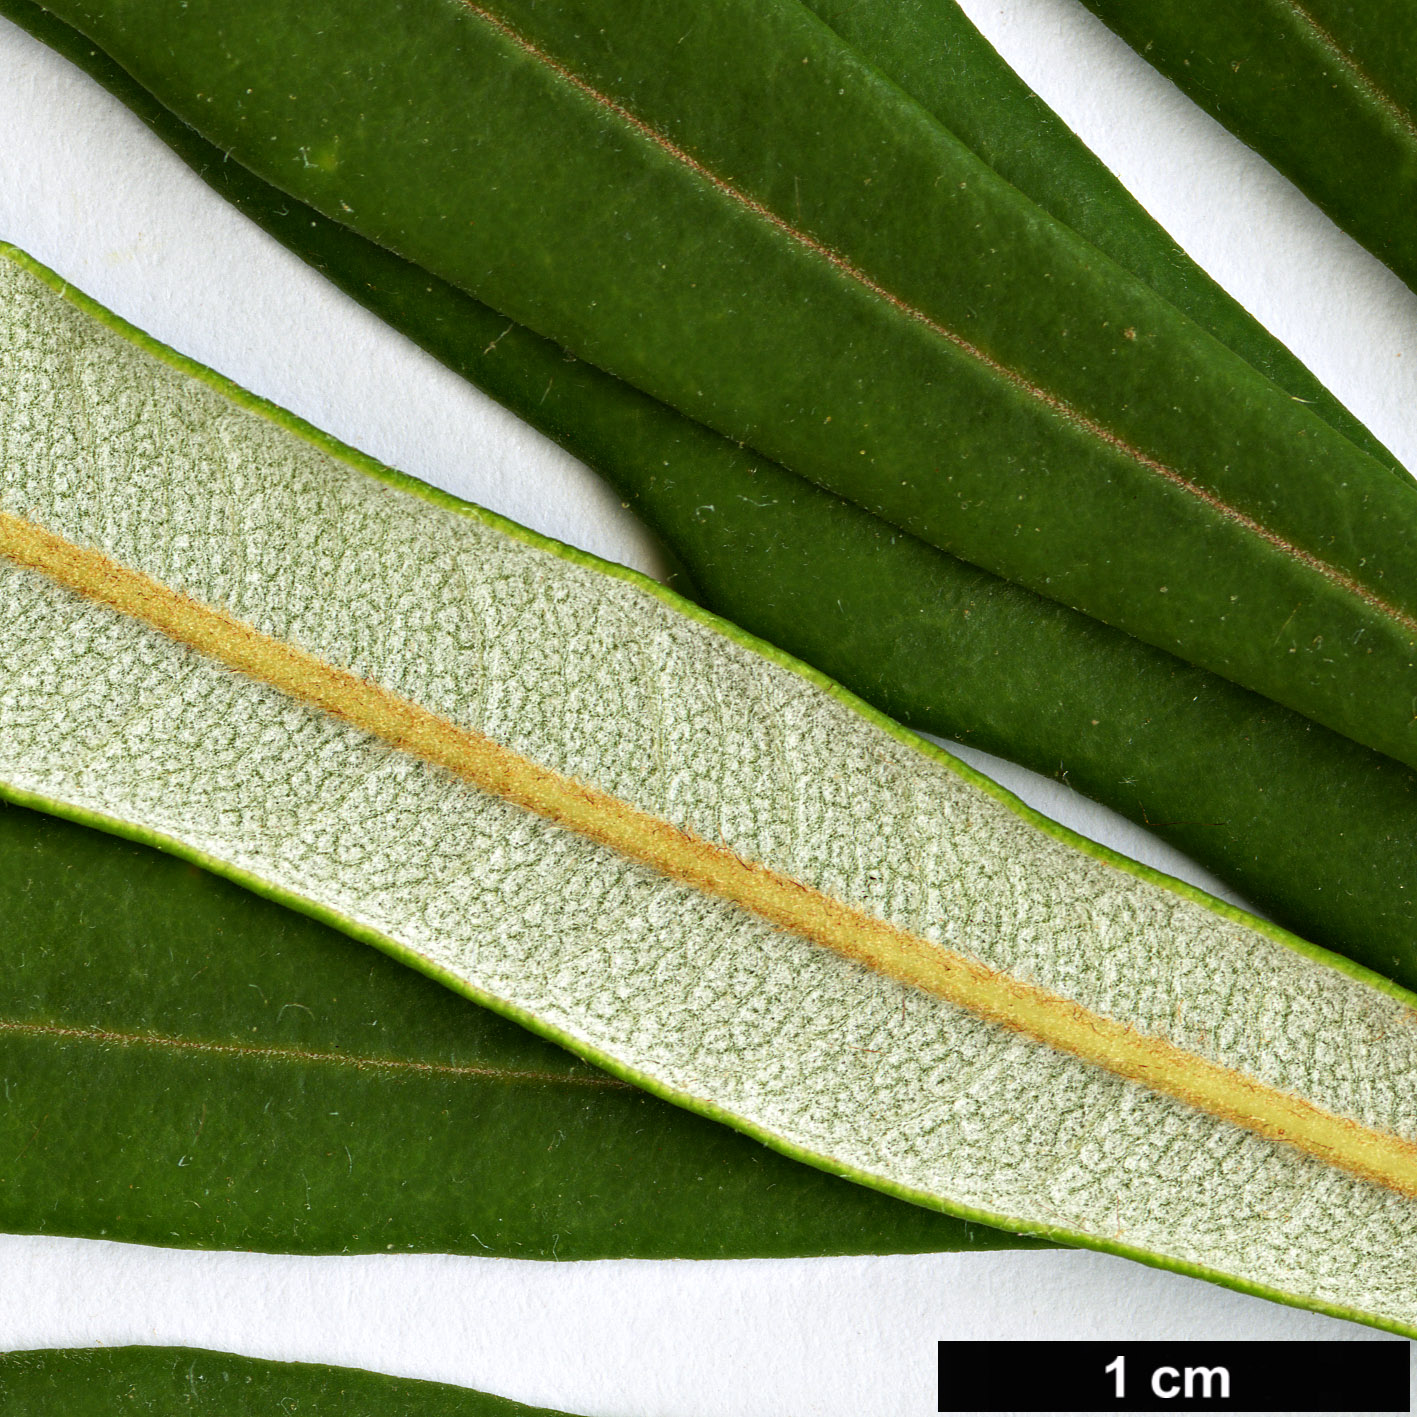 High resolution image: Family: Proteaceae - Genus: Banksia - Taxon: integrifolia - SpeciesSub: subsp. monticola